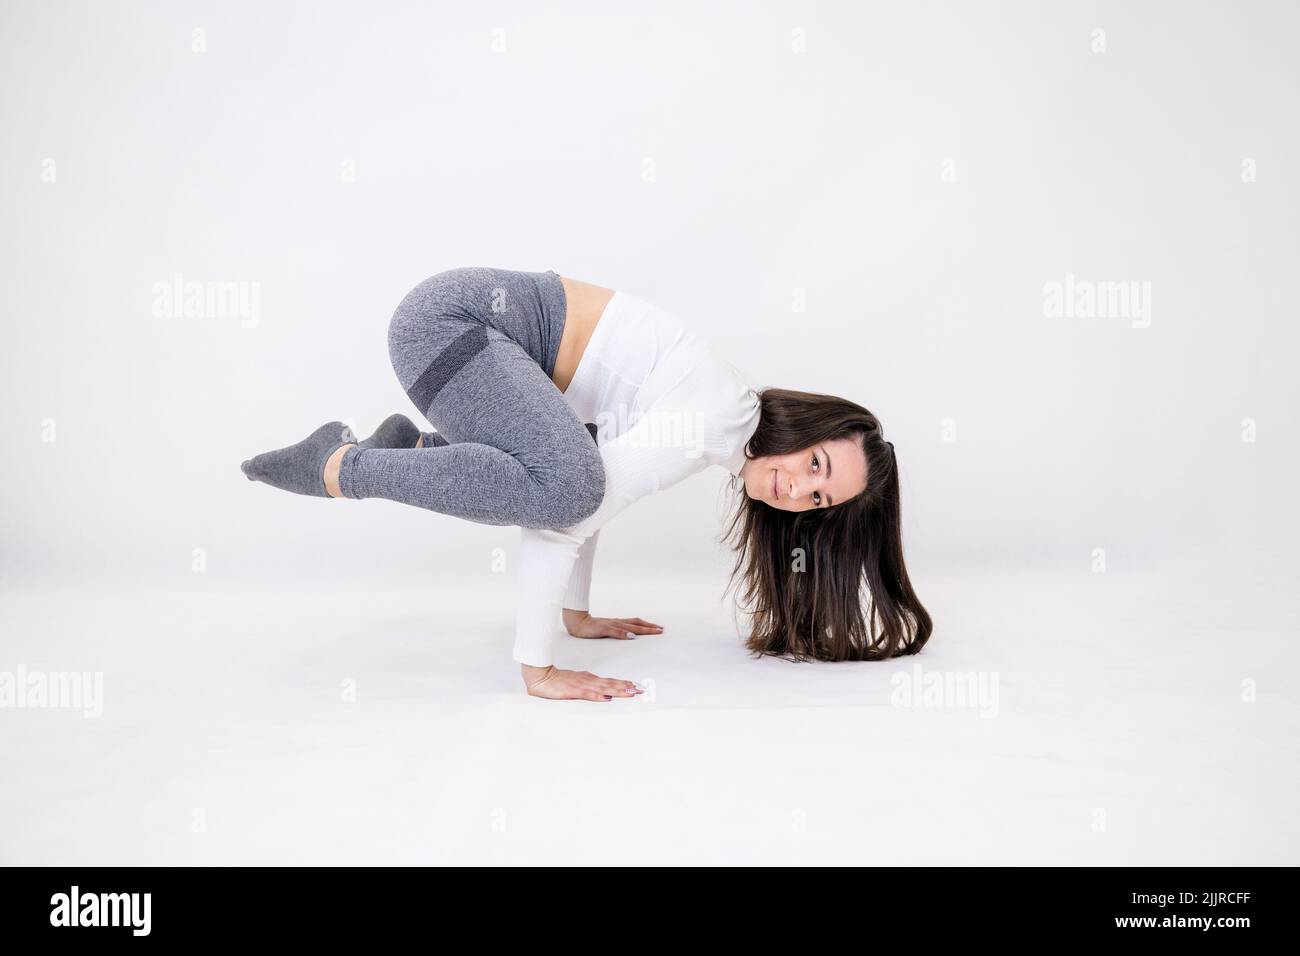 Una profesora de yoga haciendo movimientos acrobáticos mientras hace ejercicio Foto de stock